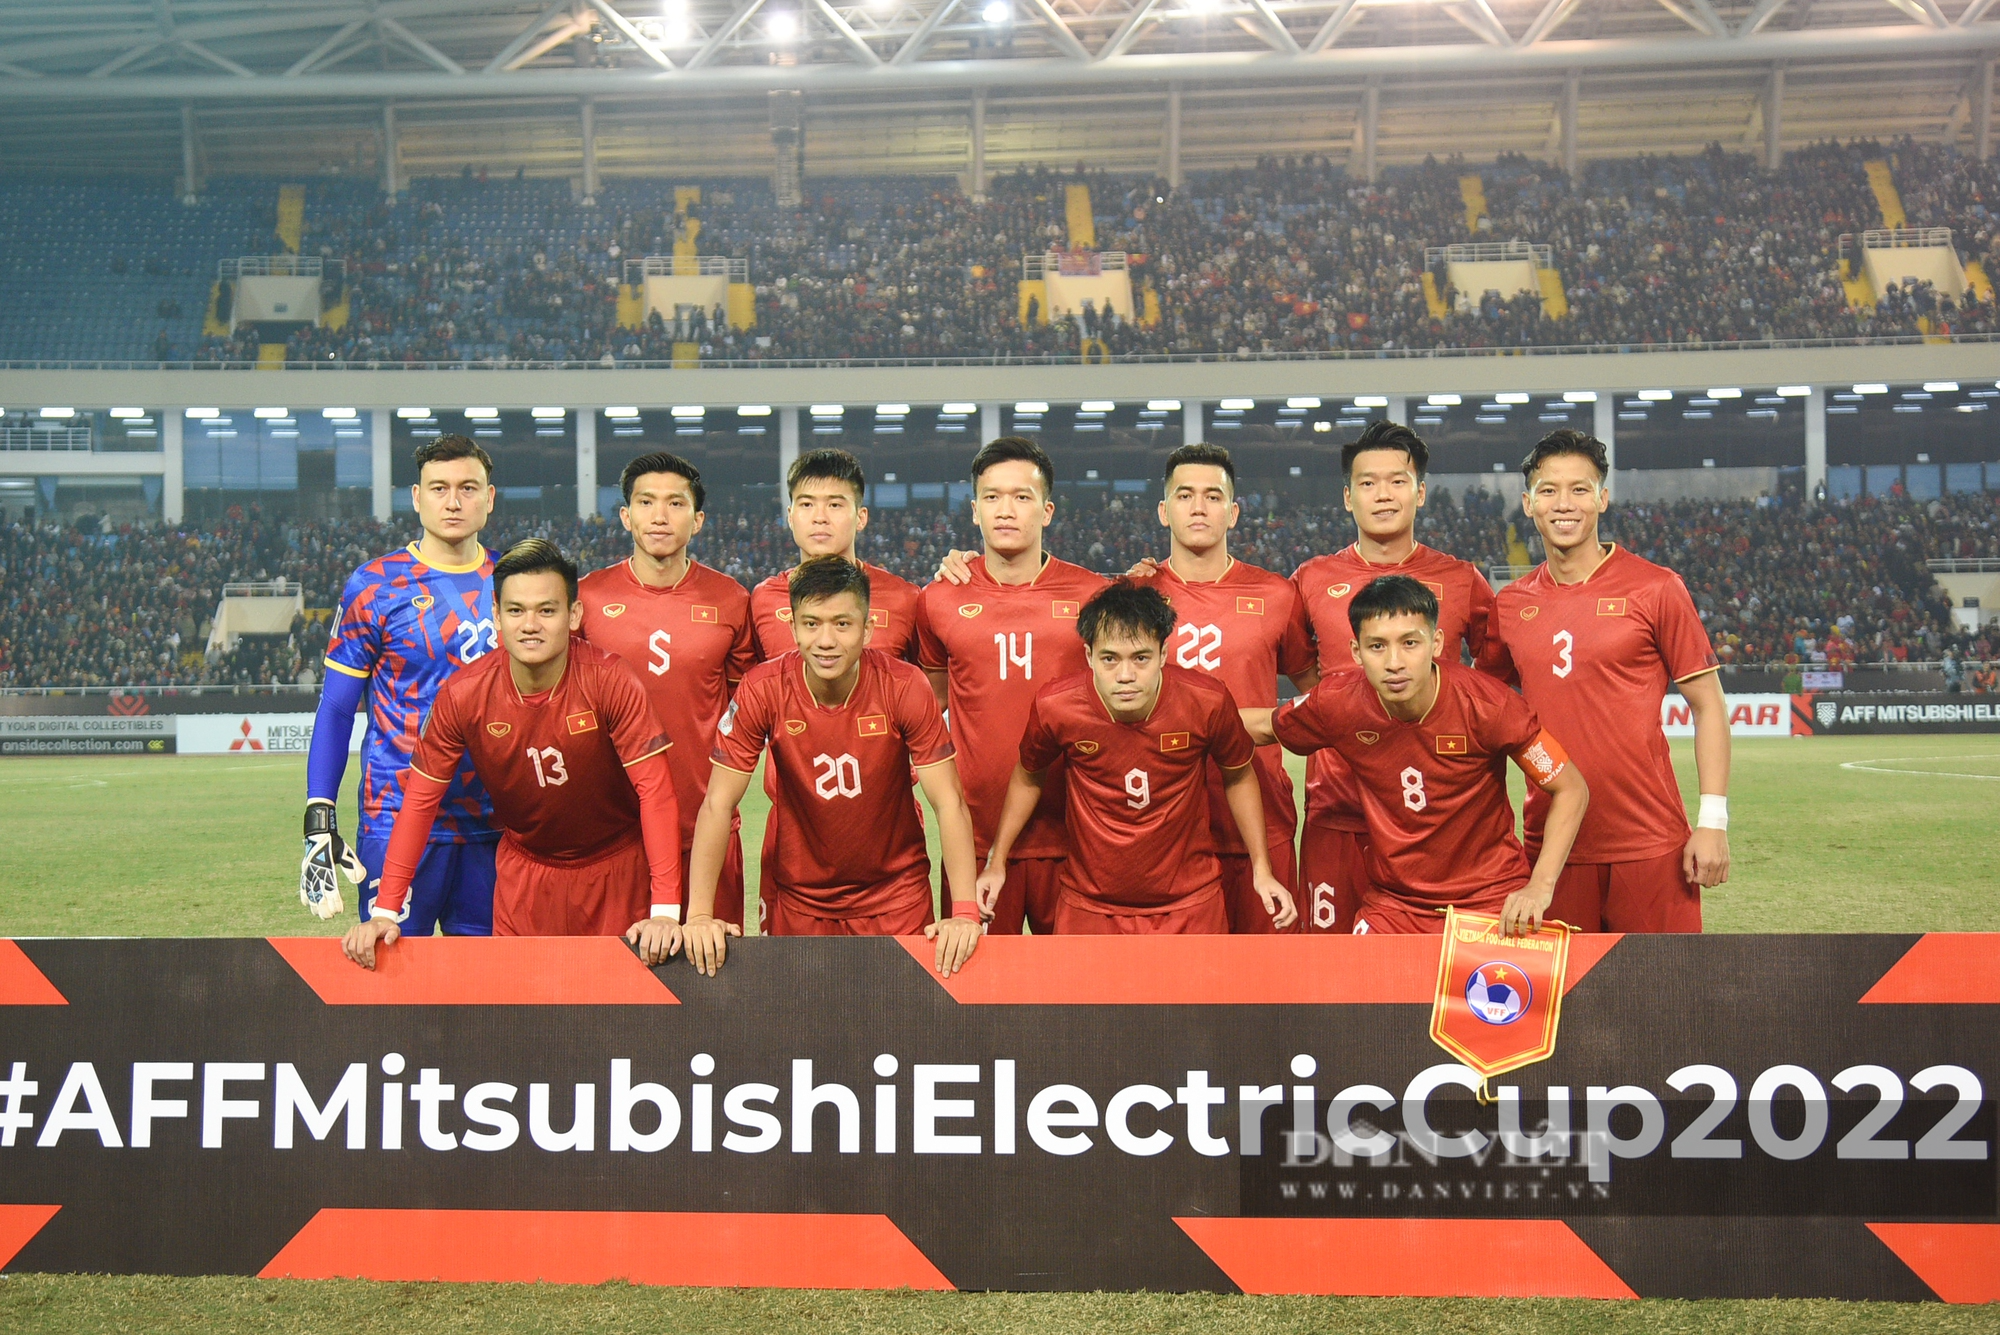 Tuyển Việt Nam chiếm ngôi đầu bảng AFF Cup 2022 sau chiến thắng 3-0 trước Malaysia - Ảnh 2.